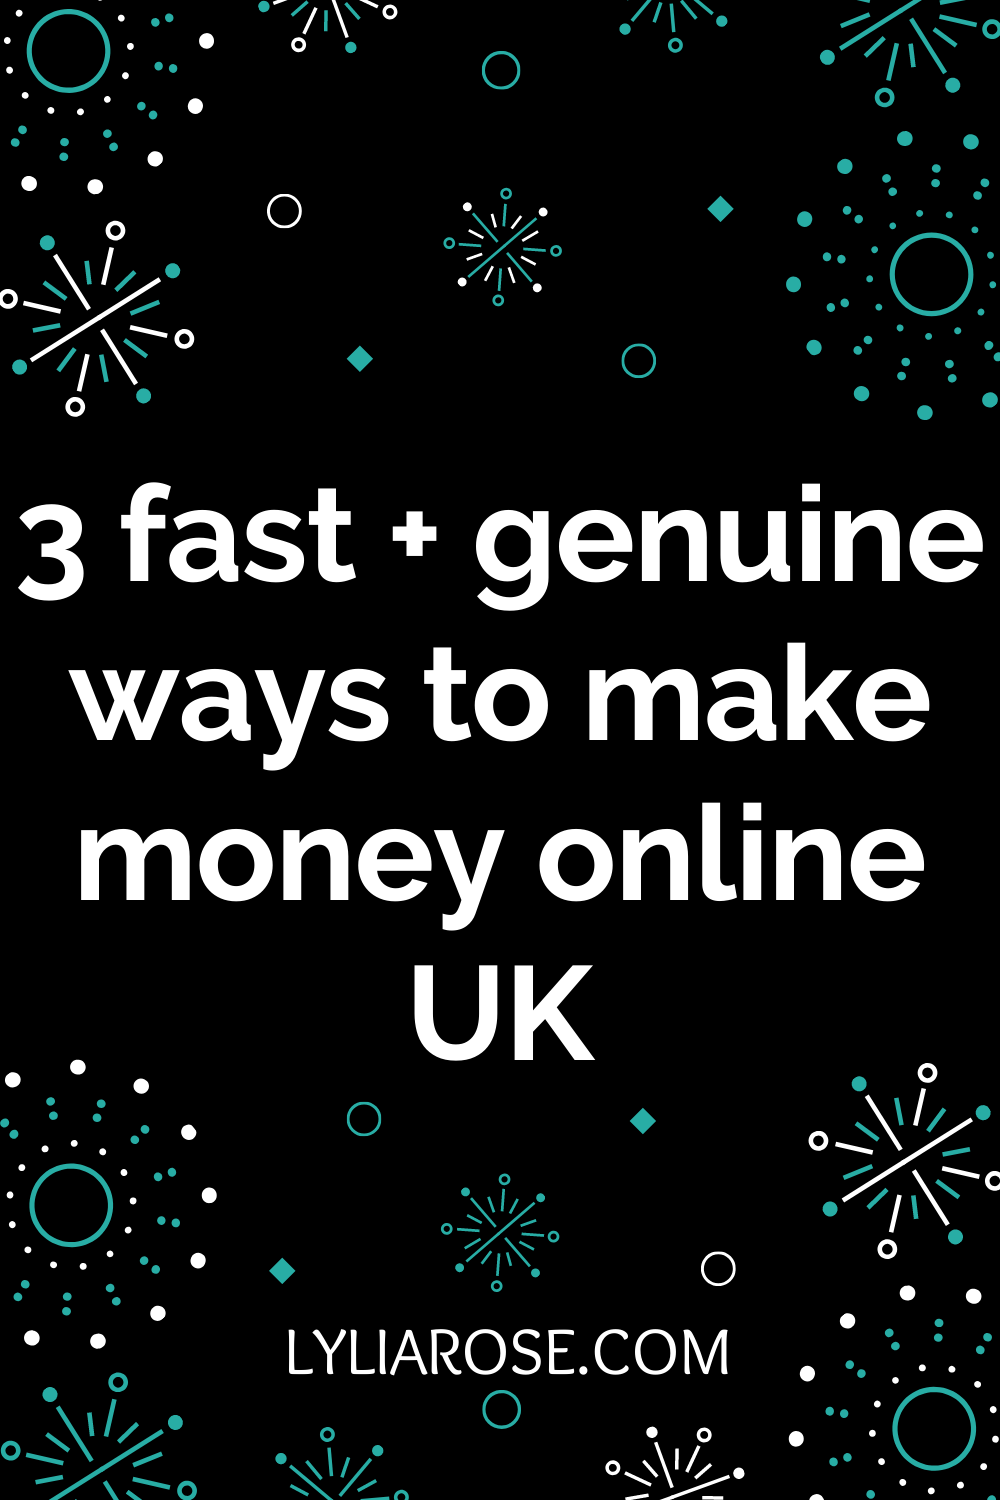 3 fast + genuine ways to make money online UK (3)